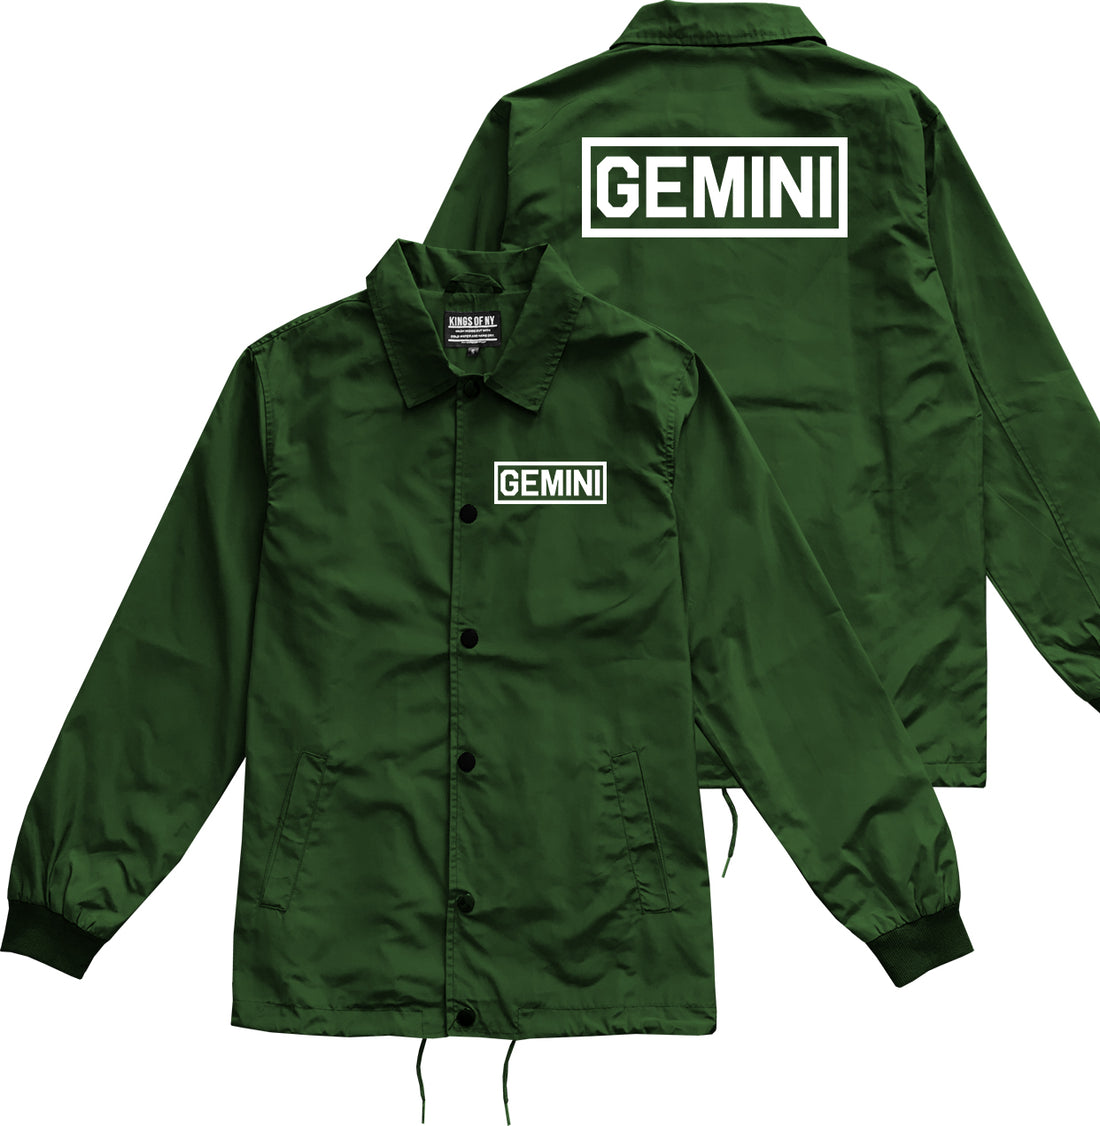 Gemini Horoscope Sign Mens Green Coaches Jacket by KINGS OF NY